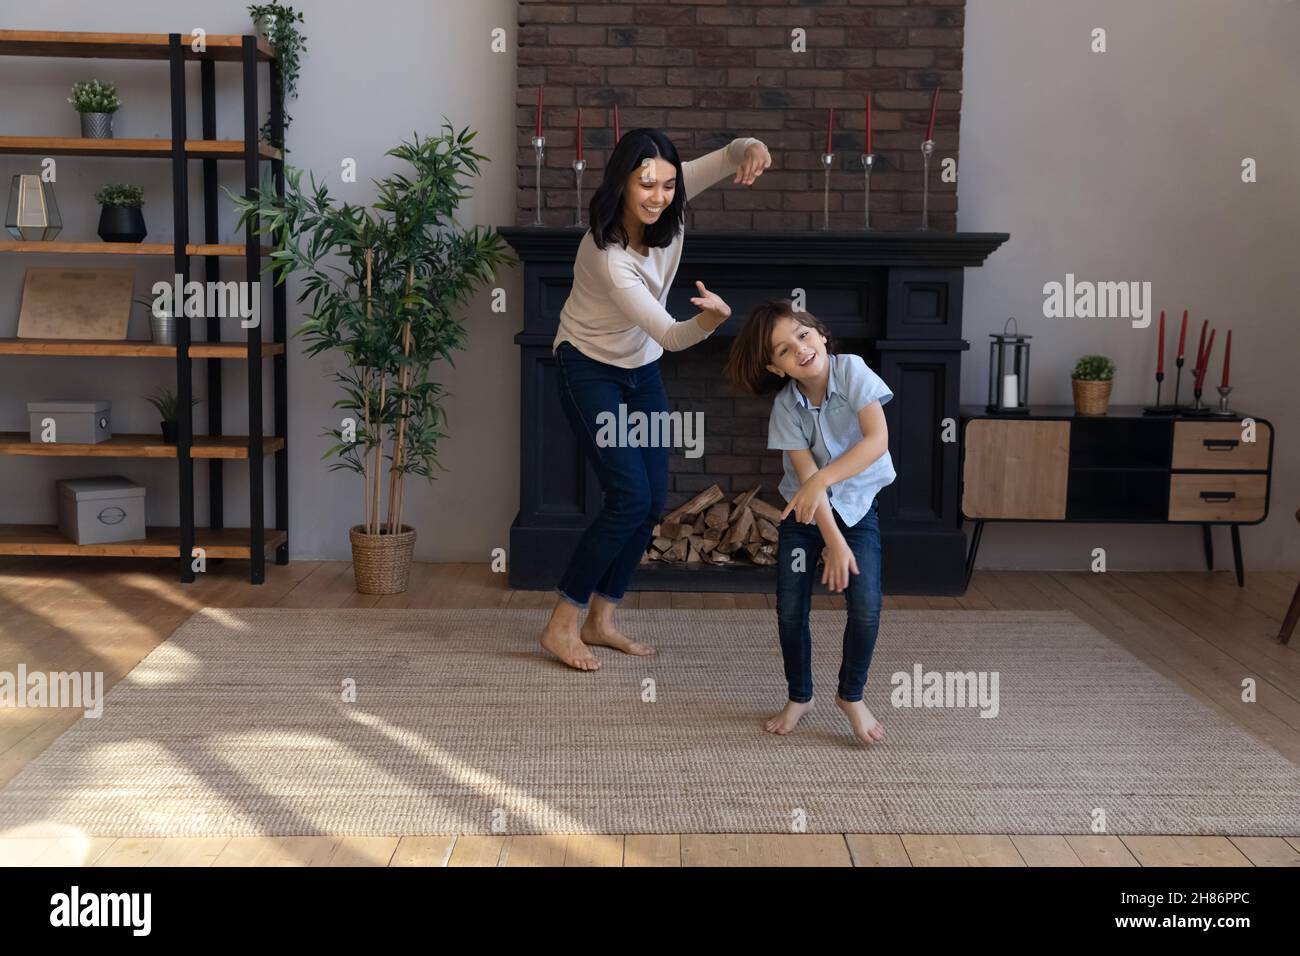 Aktiver asiatischer Babysitter und kleiner Junge, der im Wohnzimmer tanzt Stockfoto